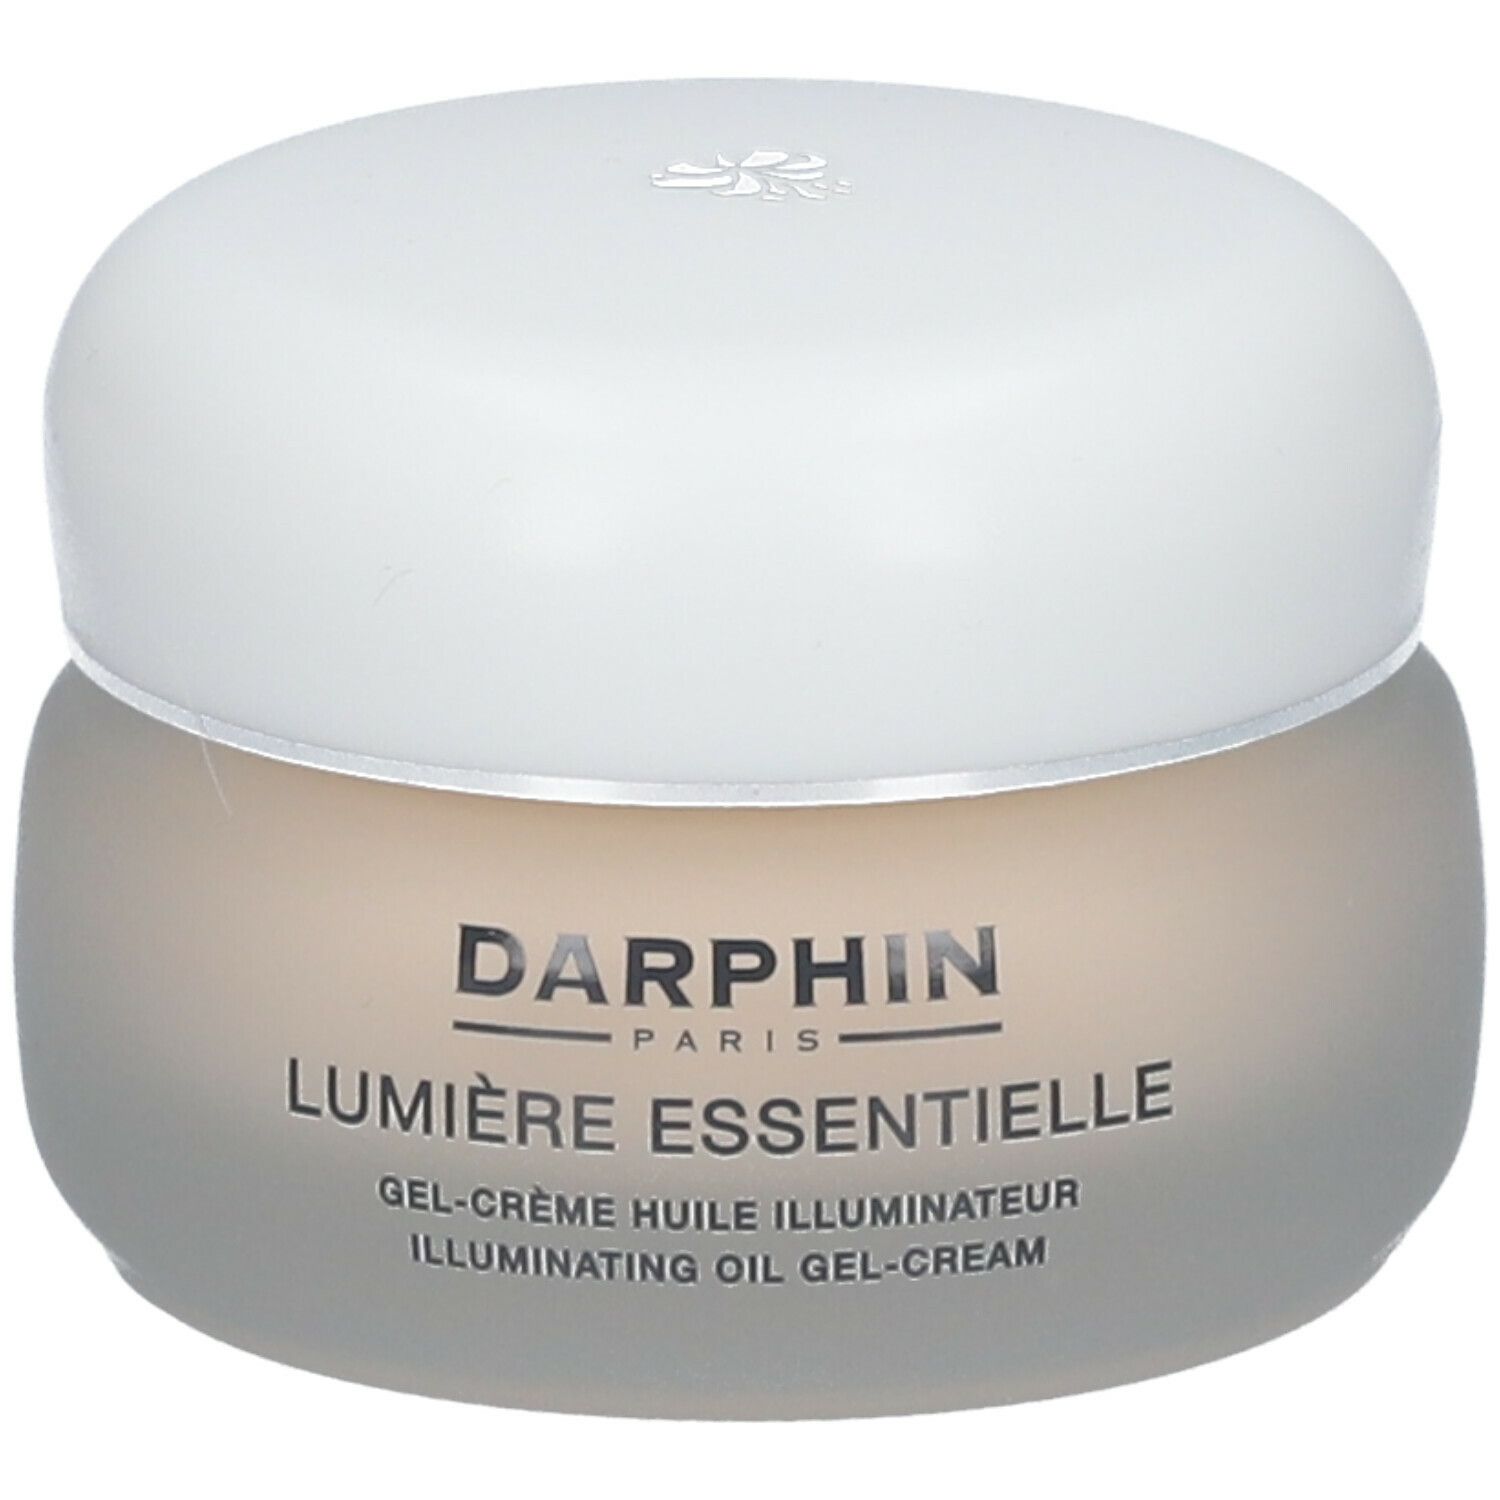 Image of DARPHIN LUMIÈRE ESSENTIELLE Illuminating Oil Gel-Cream